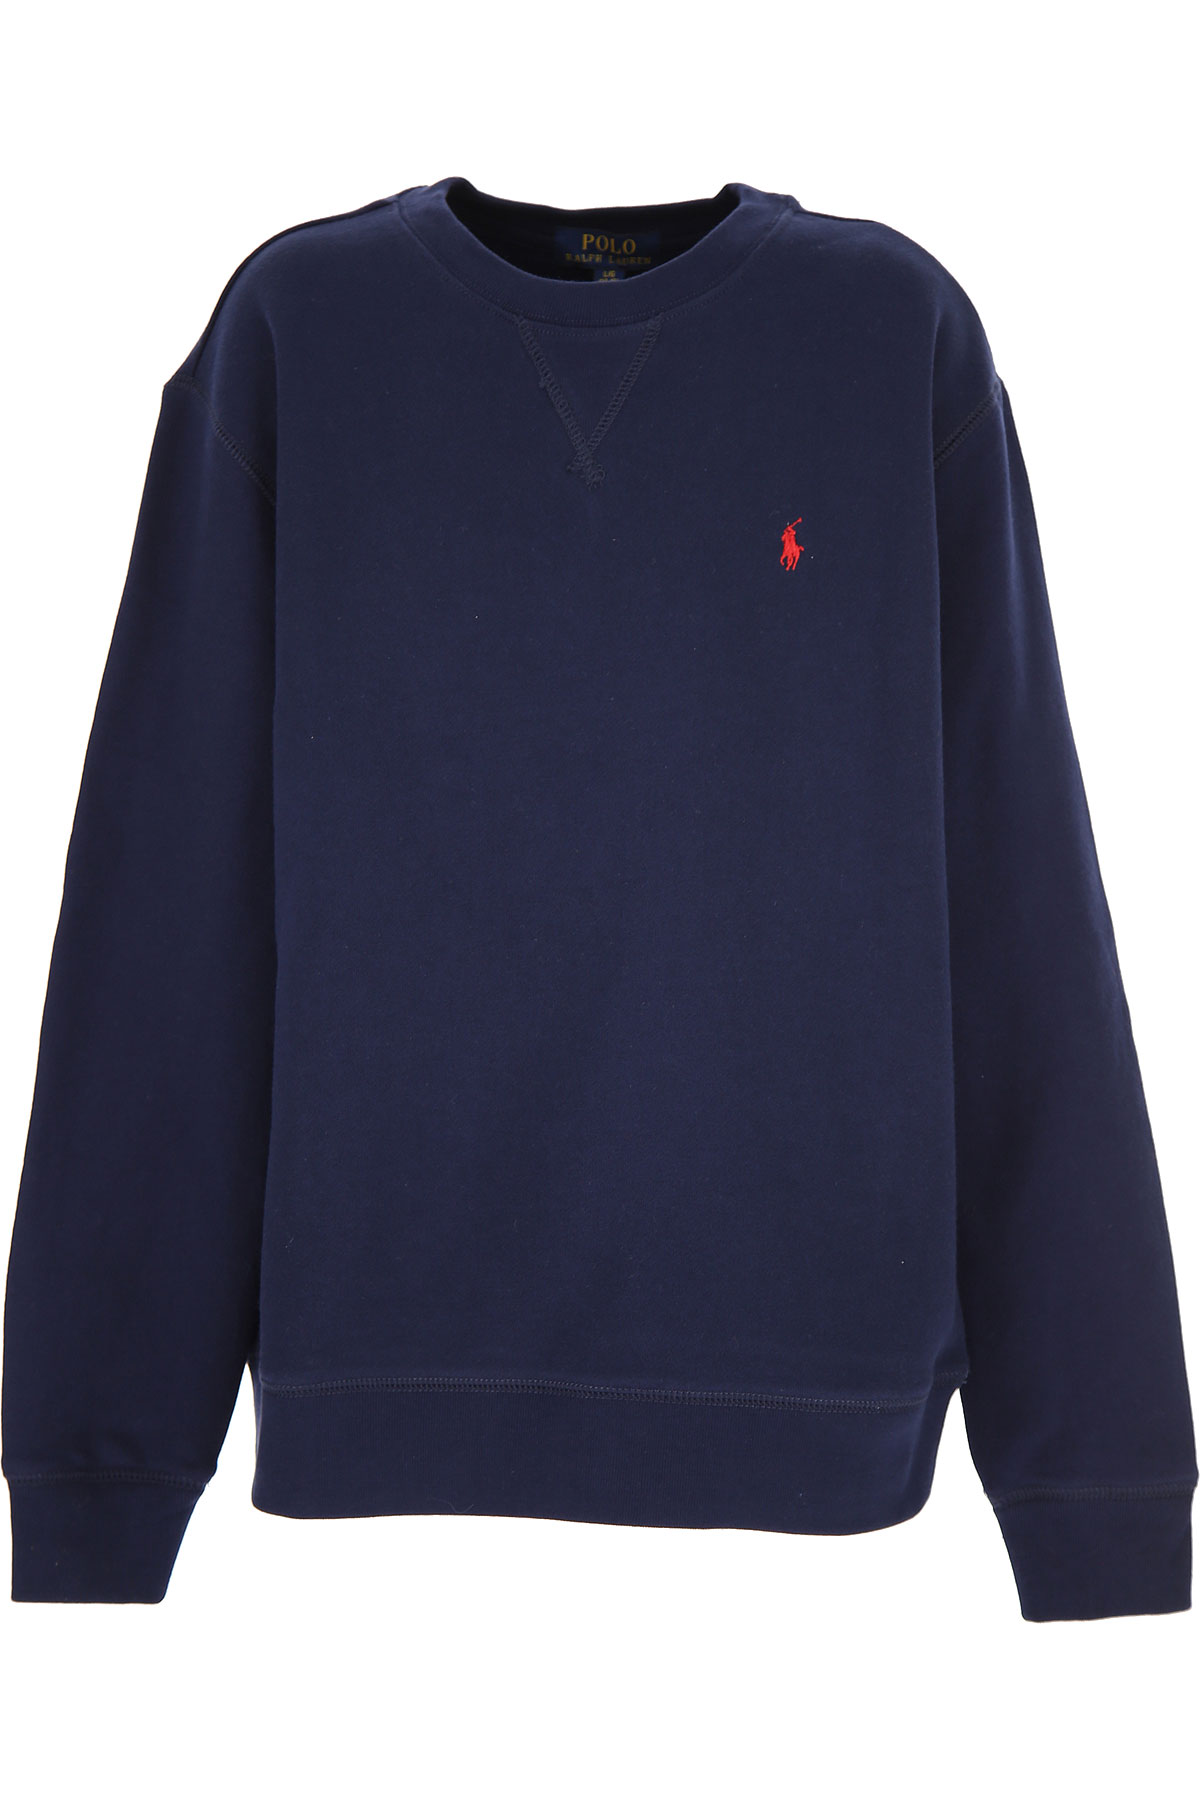 Ralph Lauren Kinder Sweatshirt & Kapuzenpullover für Jungen Günstig im Sale, Marine blau, Baumwolle, 2017, 6Y L M S XL